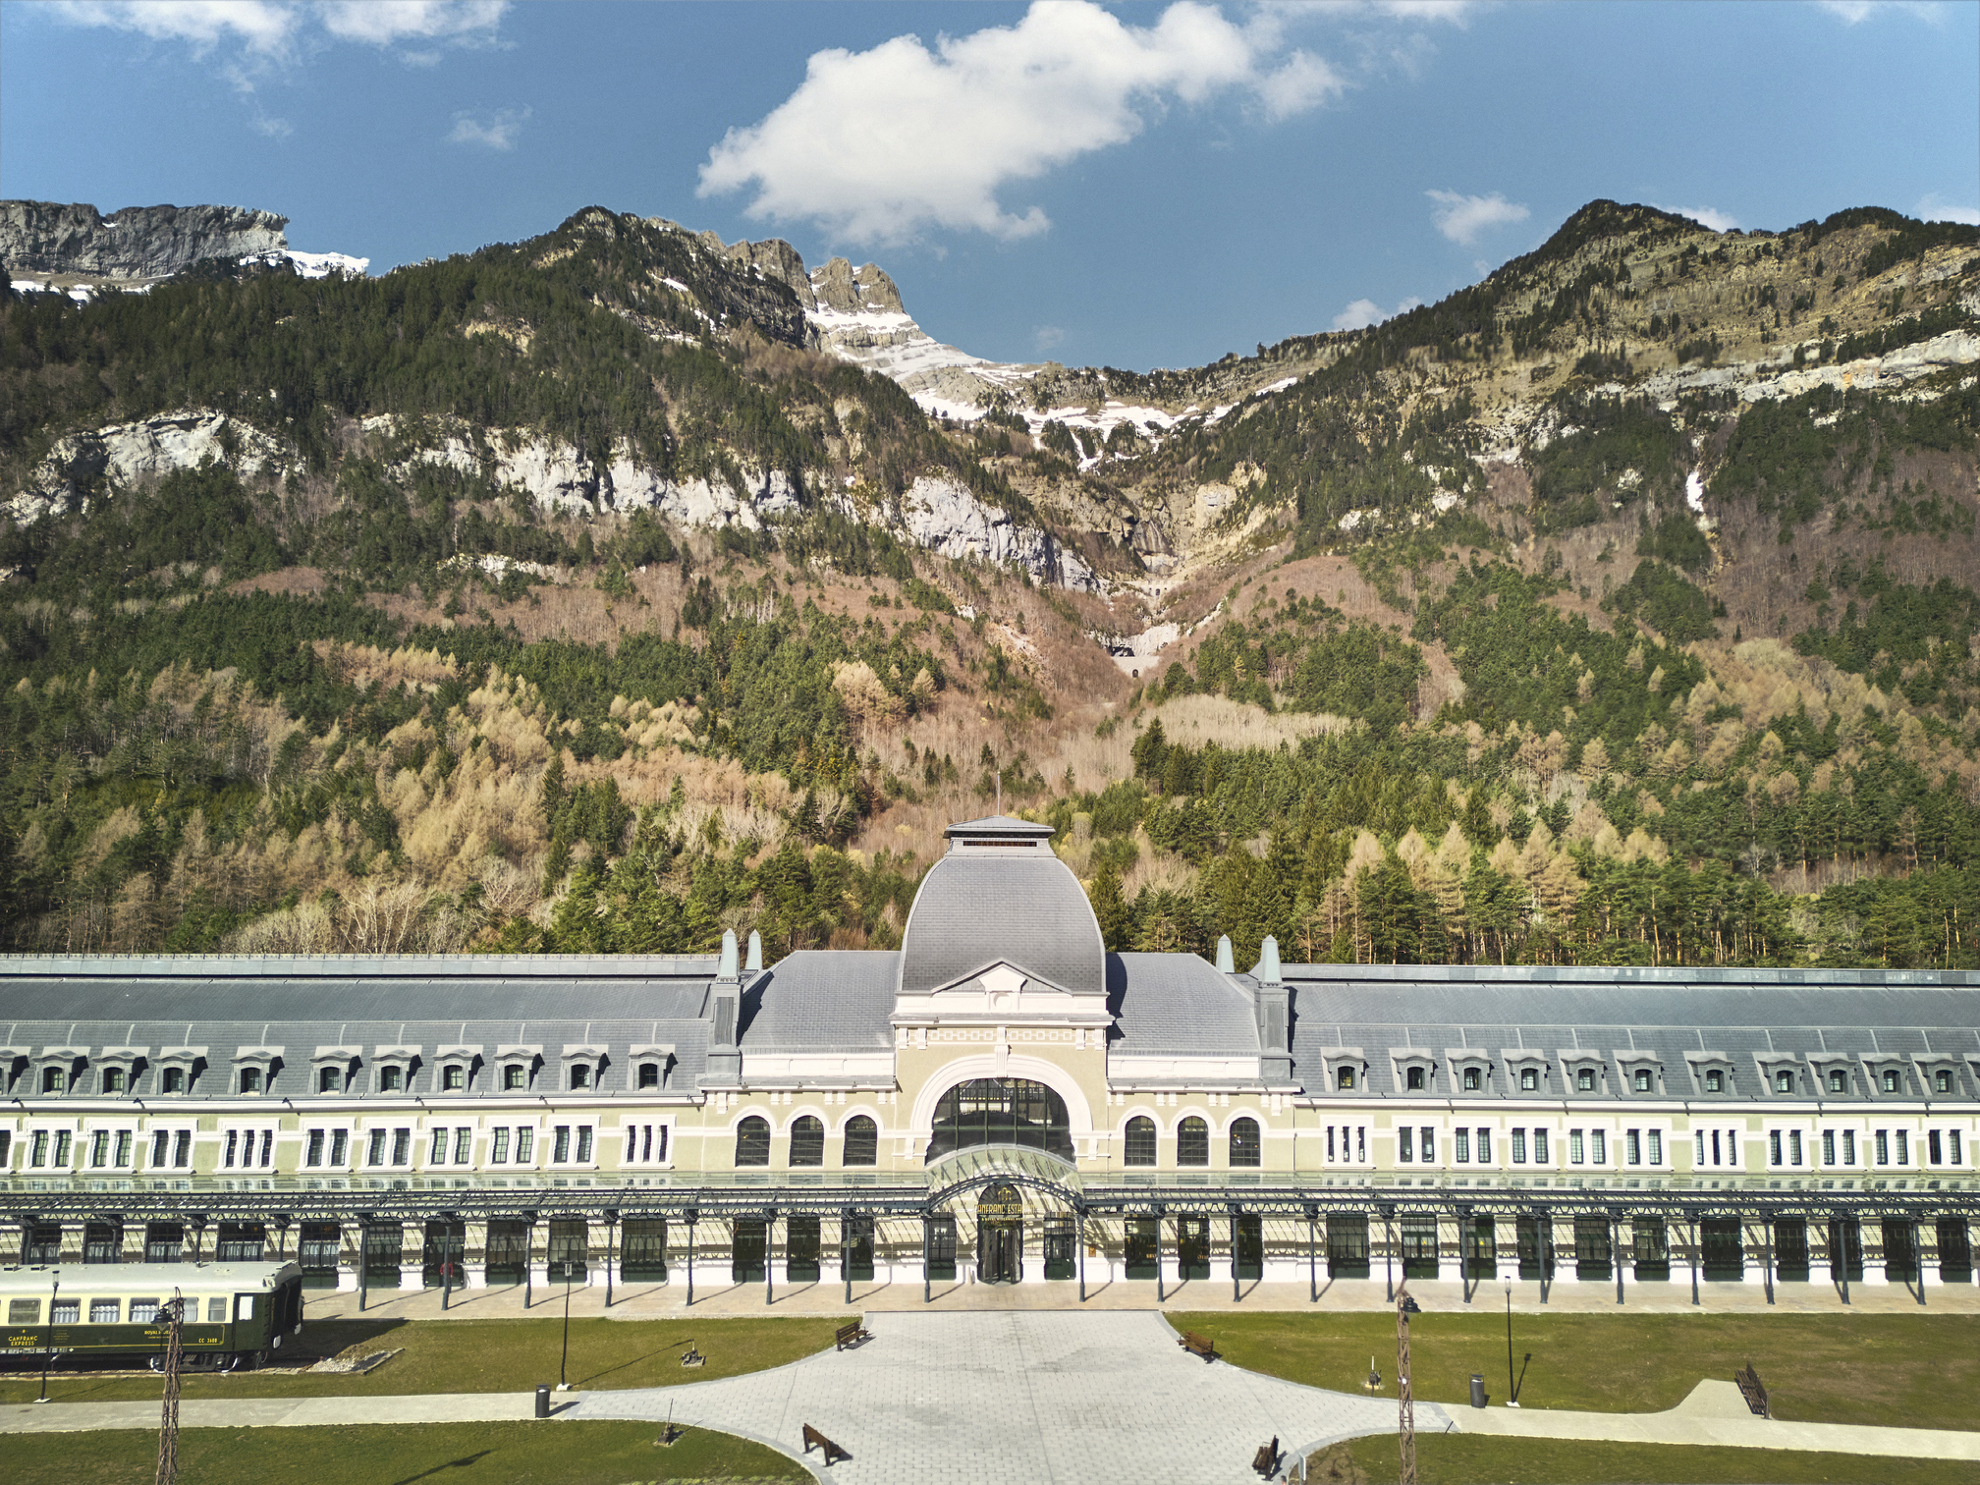 Spanische Pyrenäen: historisches Bahnhofsgebäude mit hohen Bergen im Hintergrund.